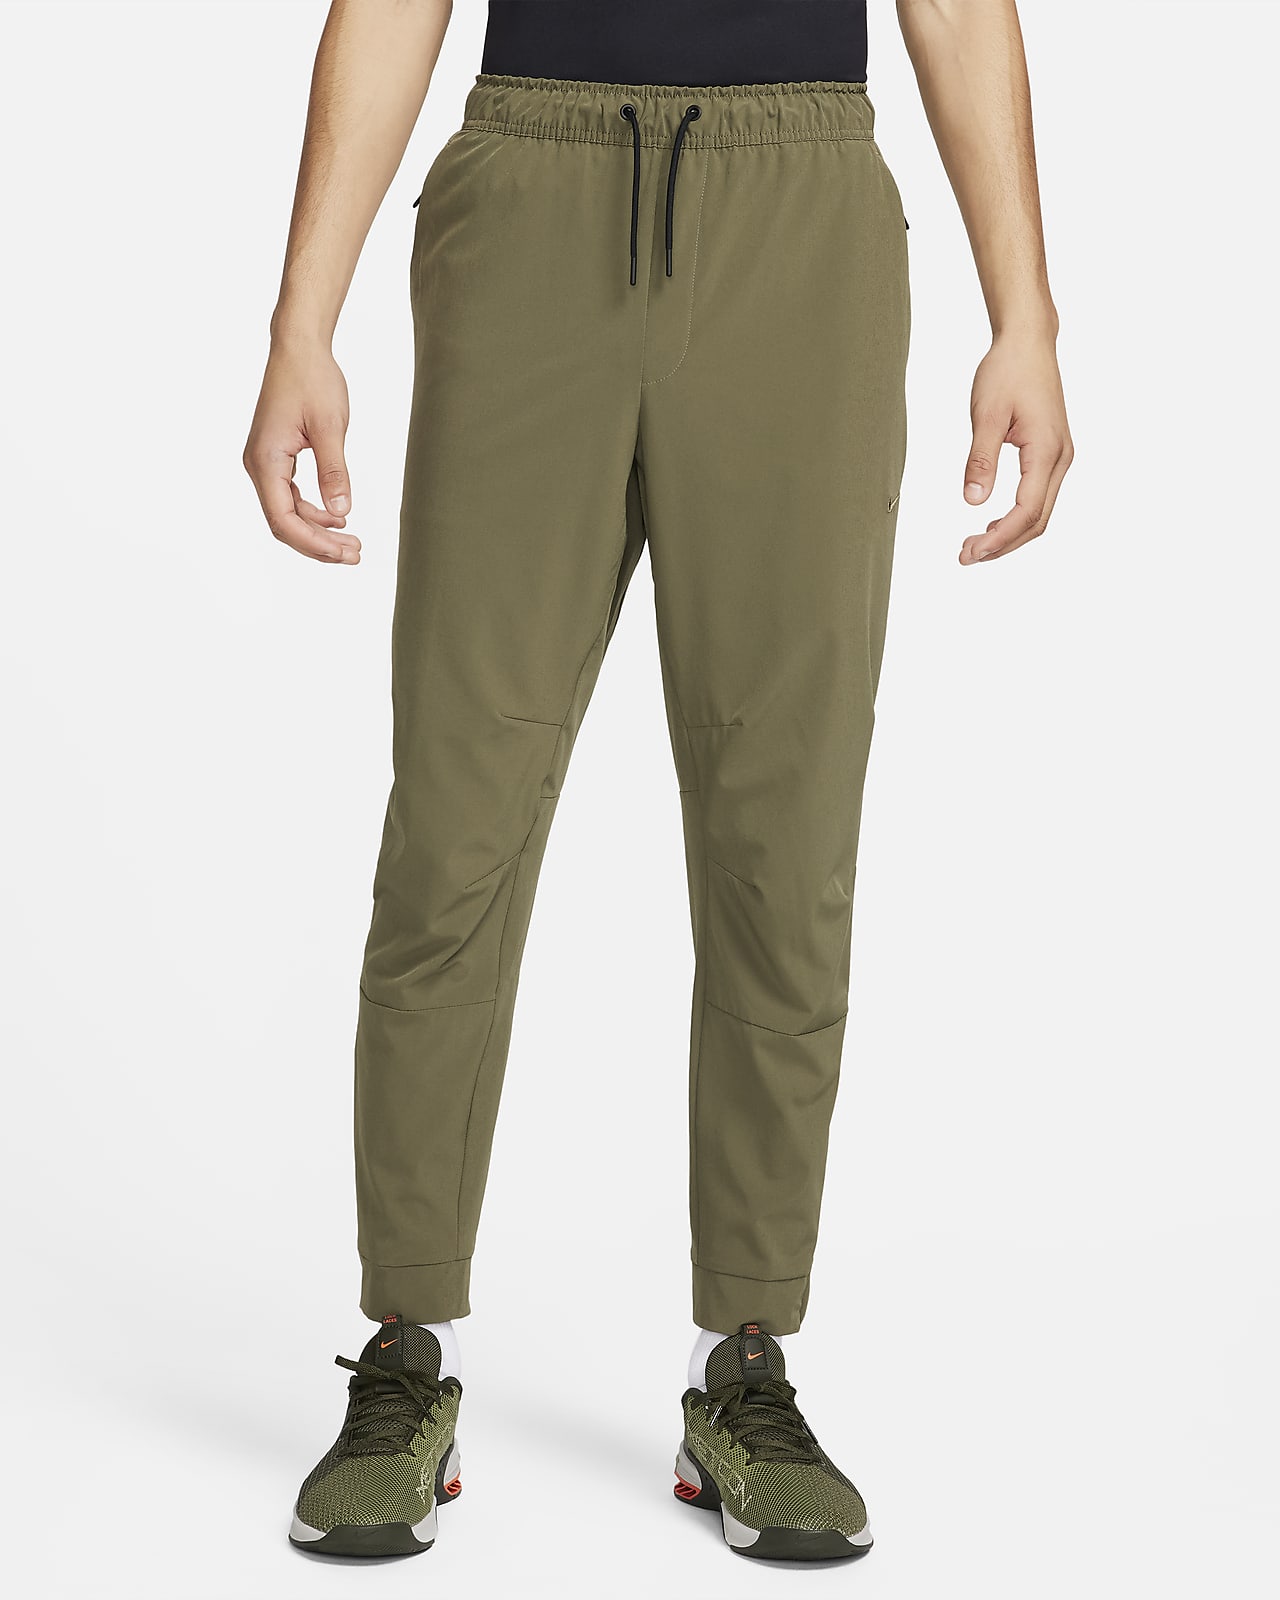 Pantalon avec ouvertures à zip Nike Dri-FIT Unlimited pour homme